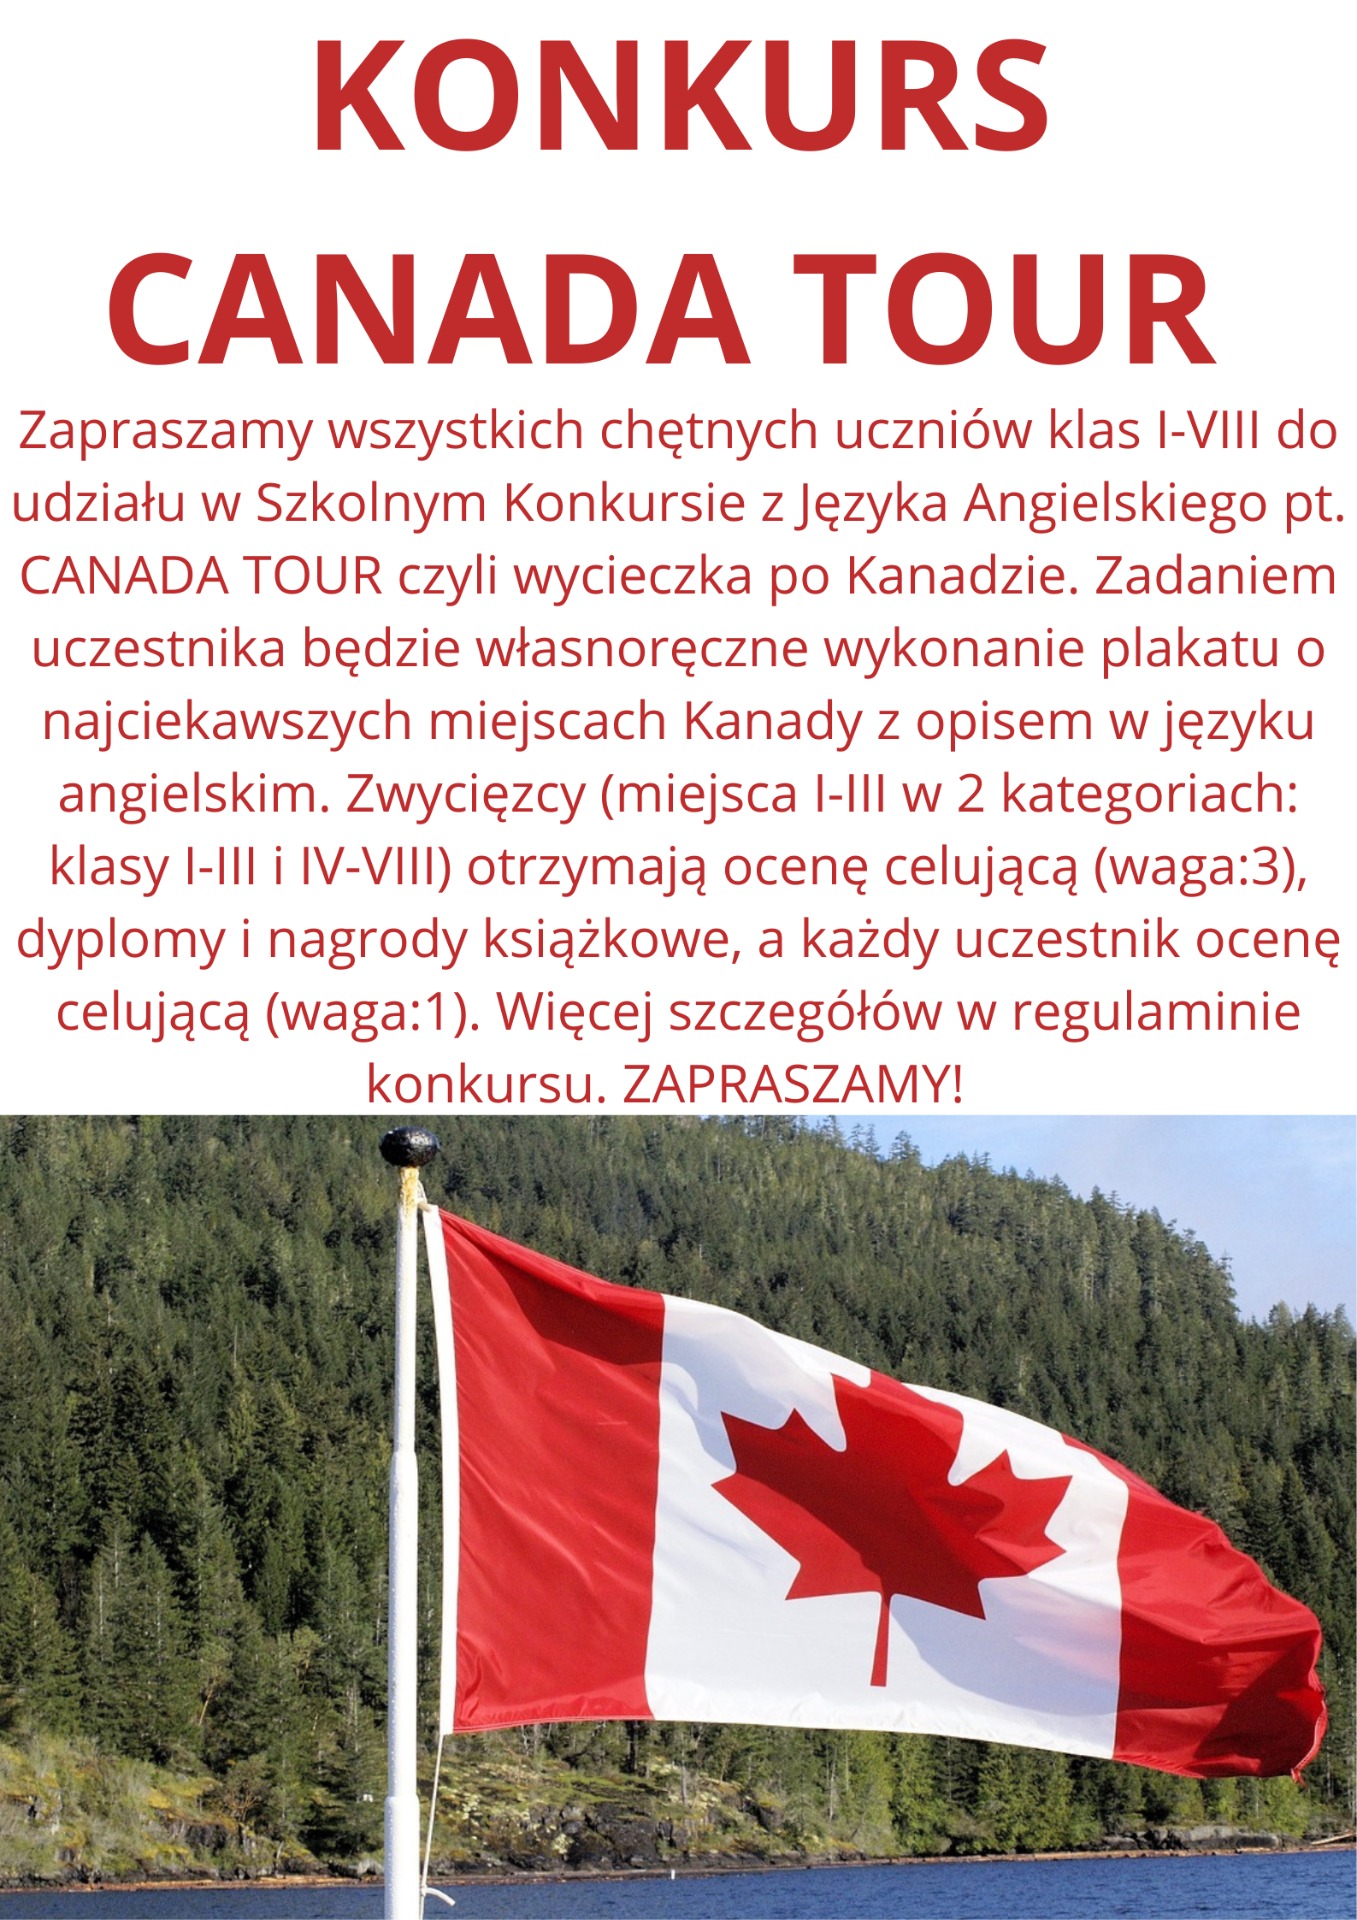 KONKURS CANADA TOUR czyli wycieczka po Kanadzie - Obrazek 1